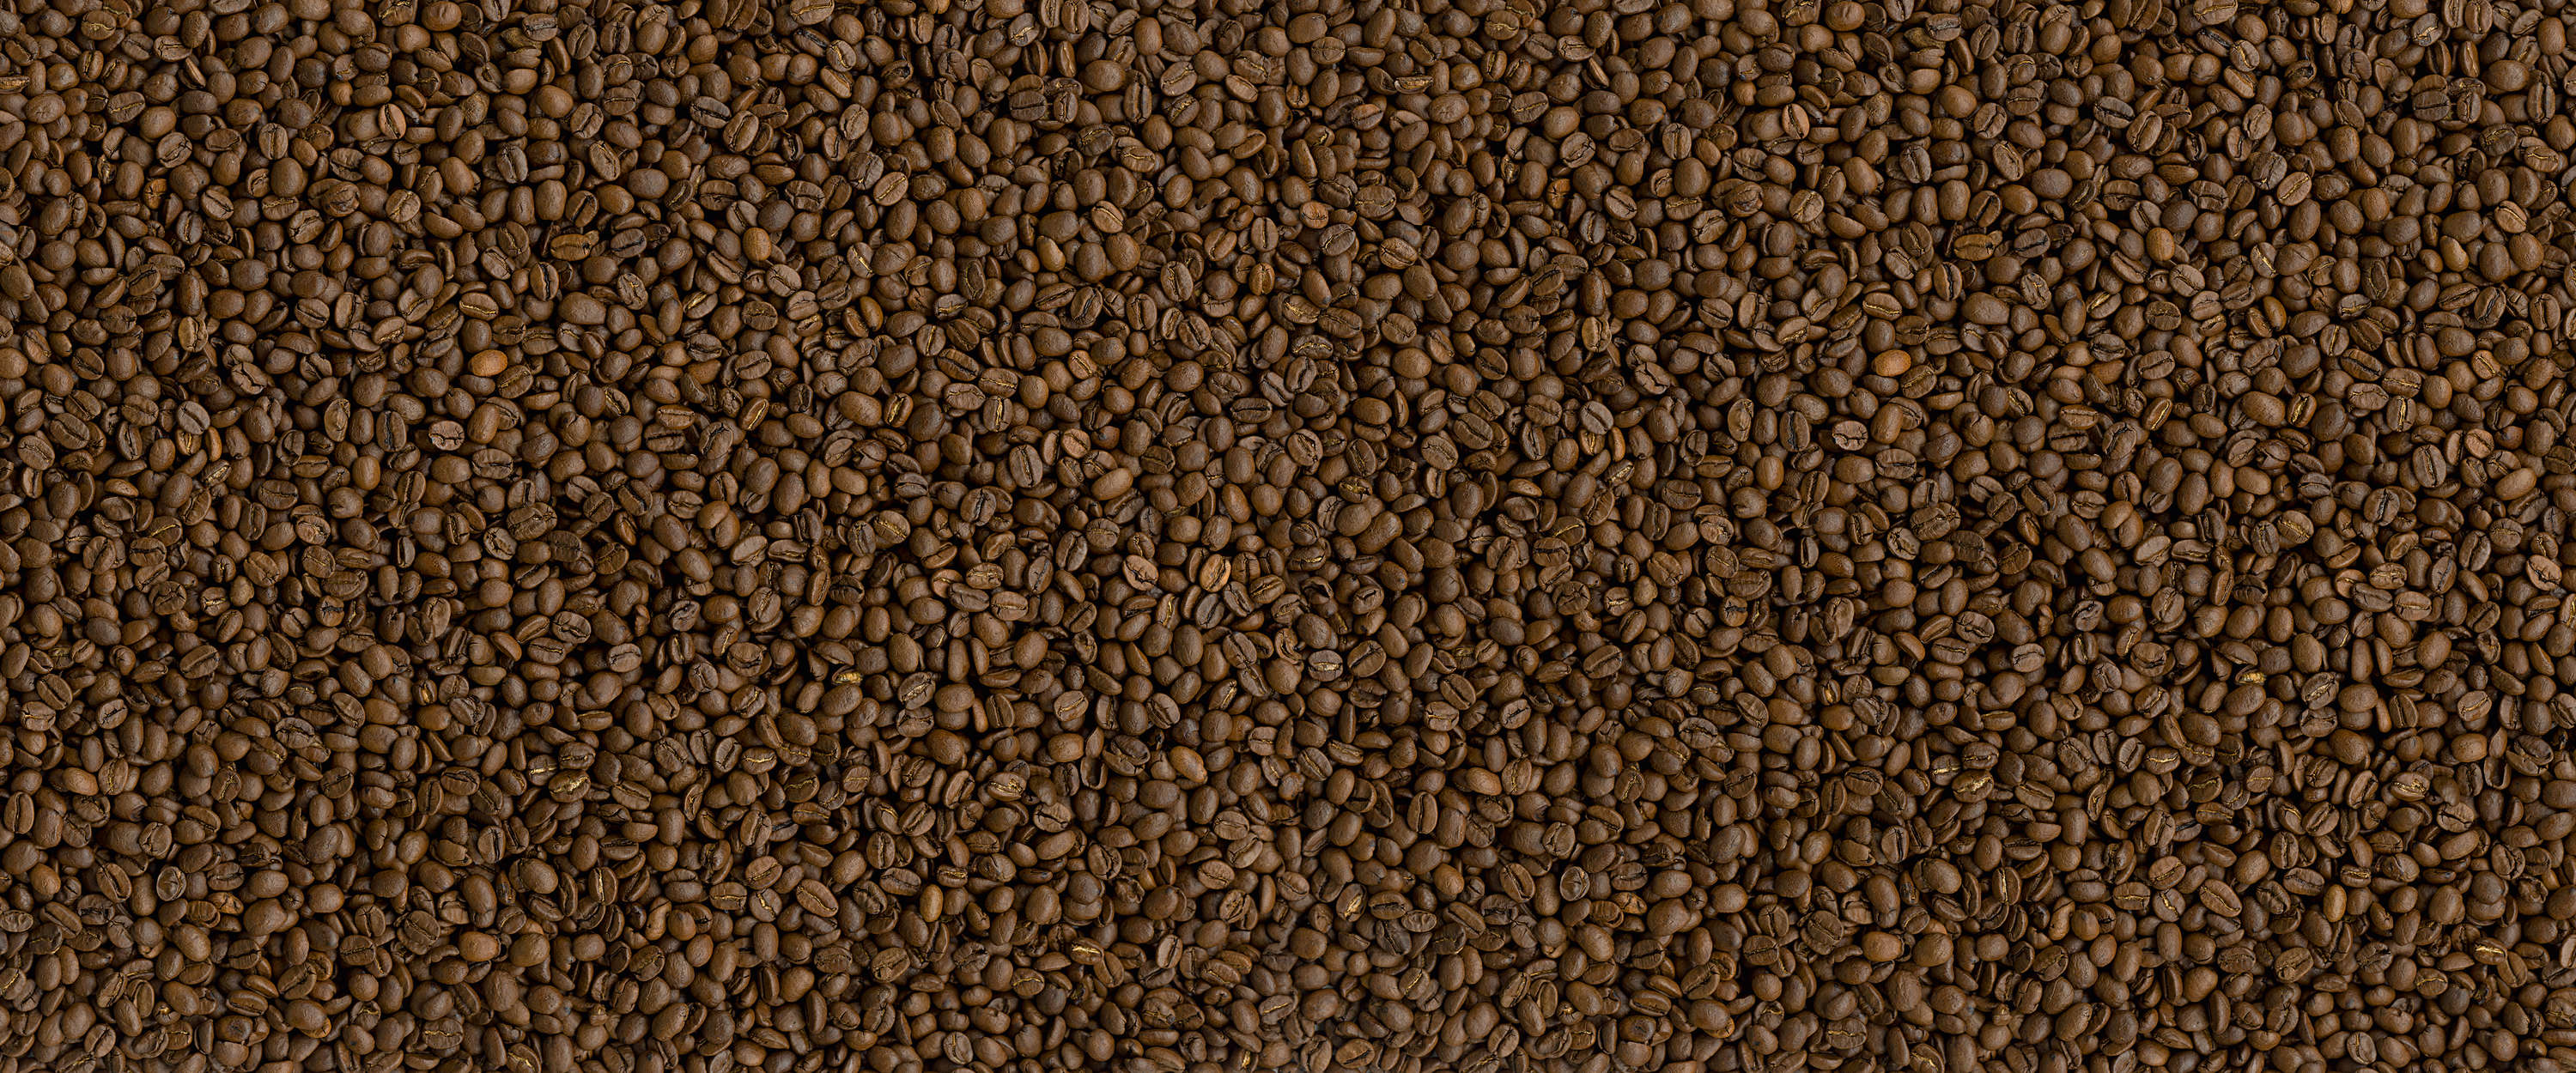             Des grains de café comme Papier peint panoramique pour une ambiance chaleureuse
        